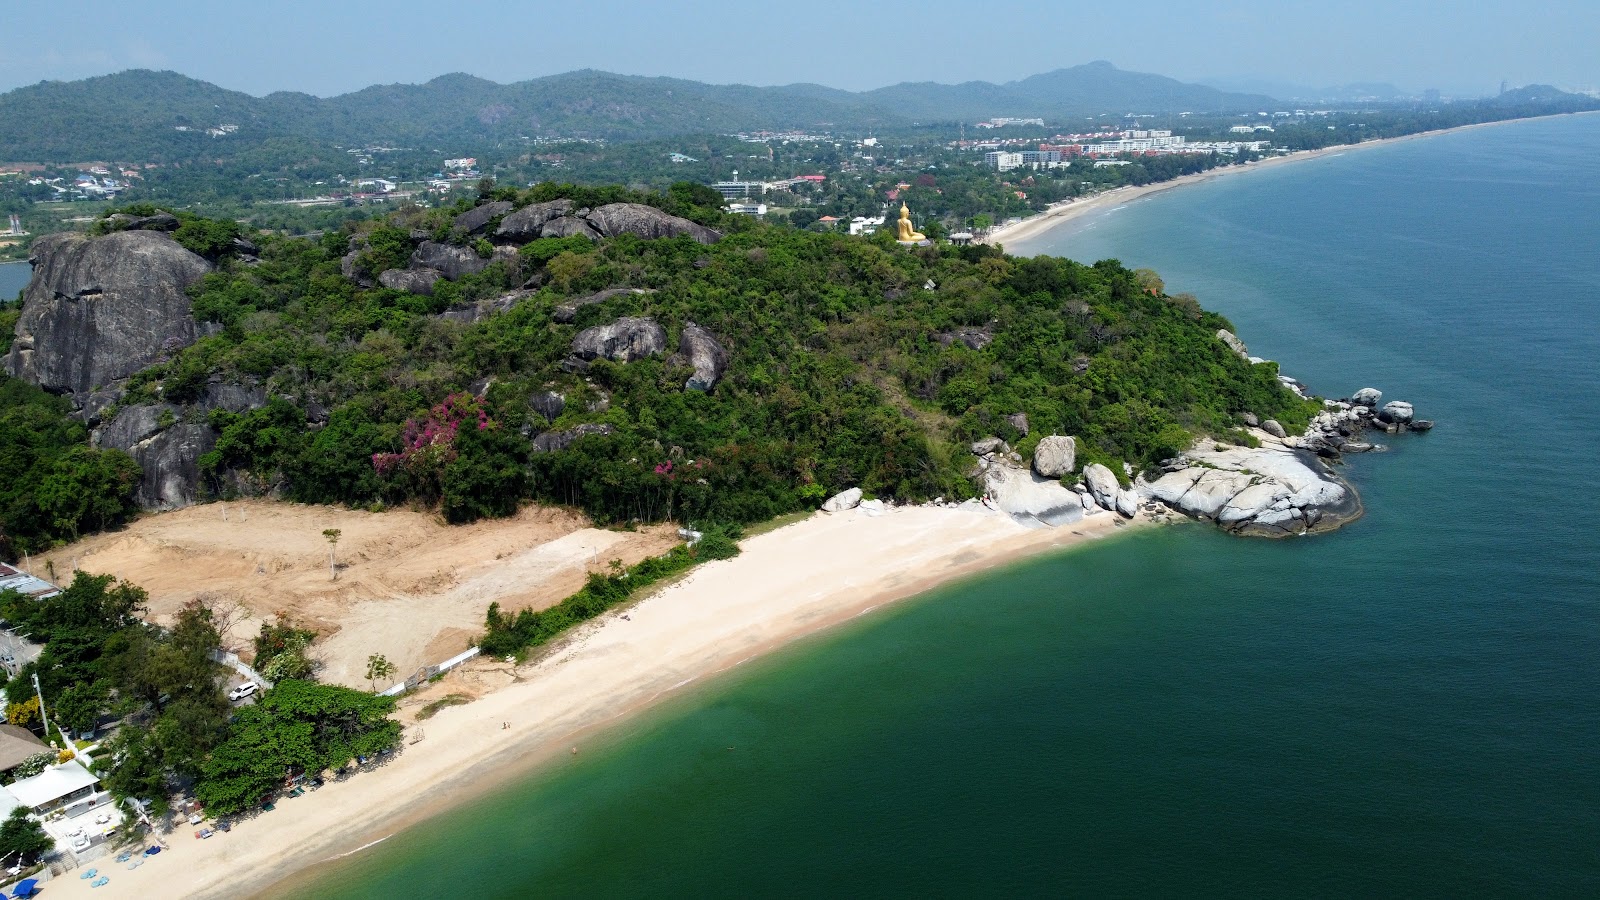 Zdjęcie Sai Noi Beach z powierzchnią turkusowa czysta woda